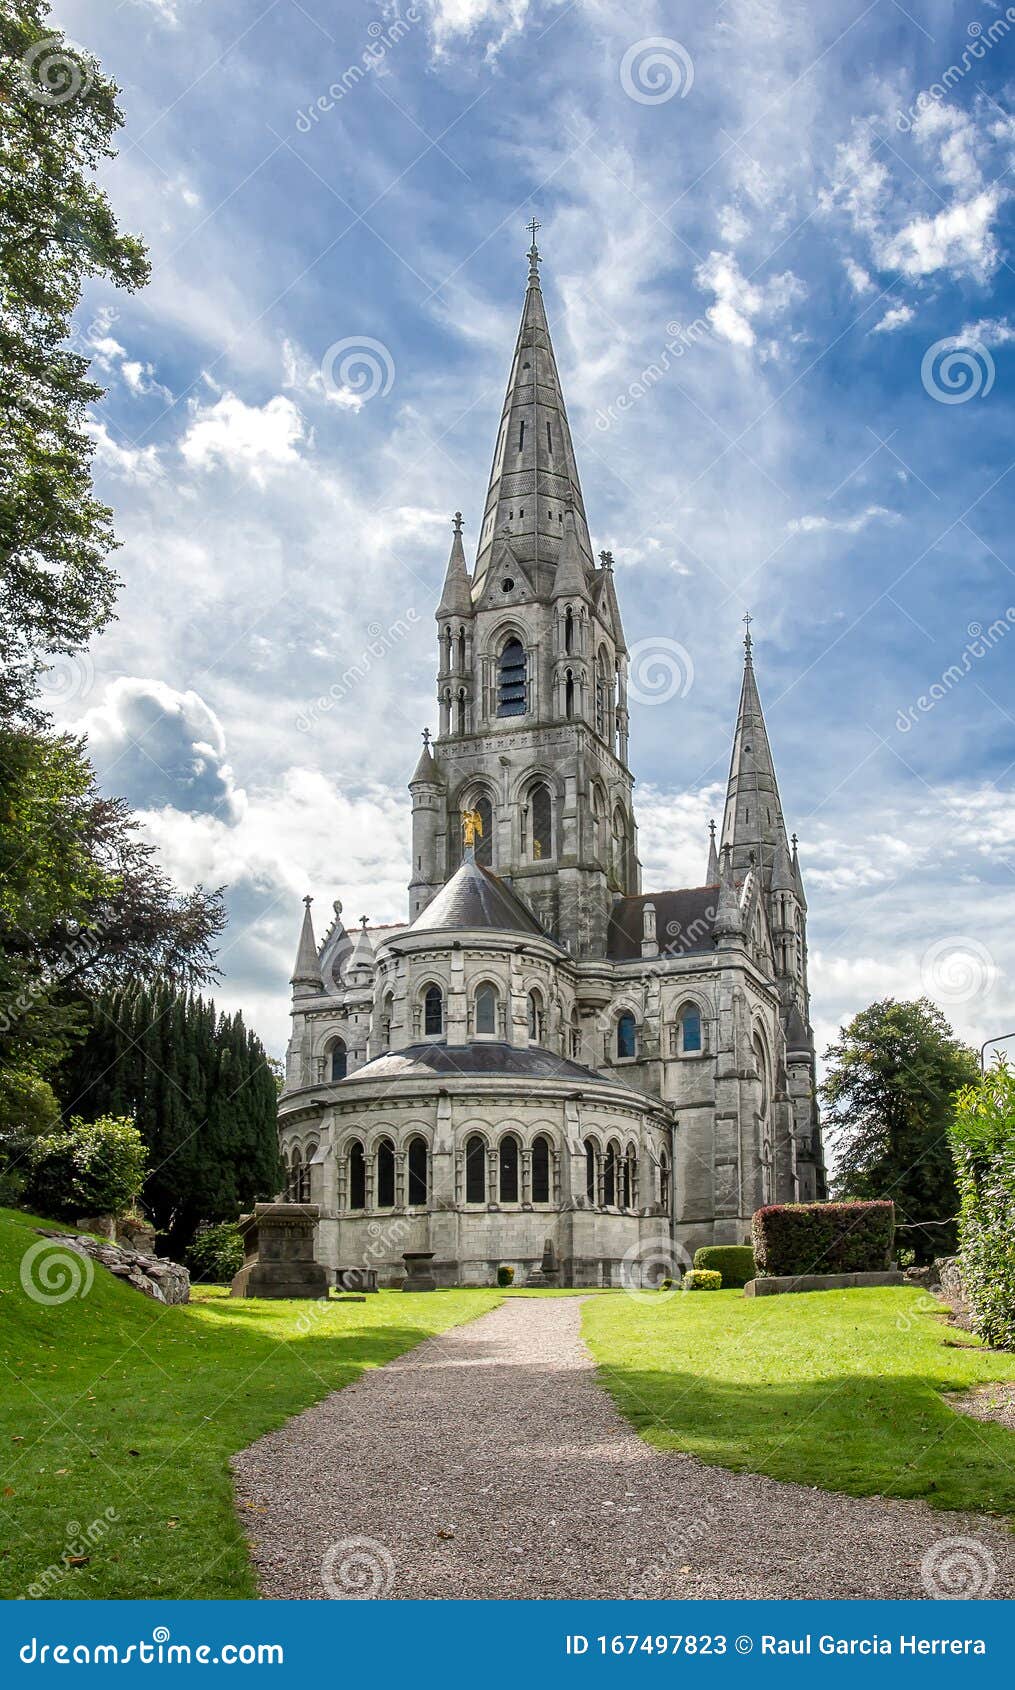 Mooie Kathedraal Van Saint-Fin-Barre in Ierland Stock Afbeelding ...